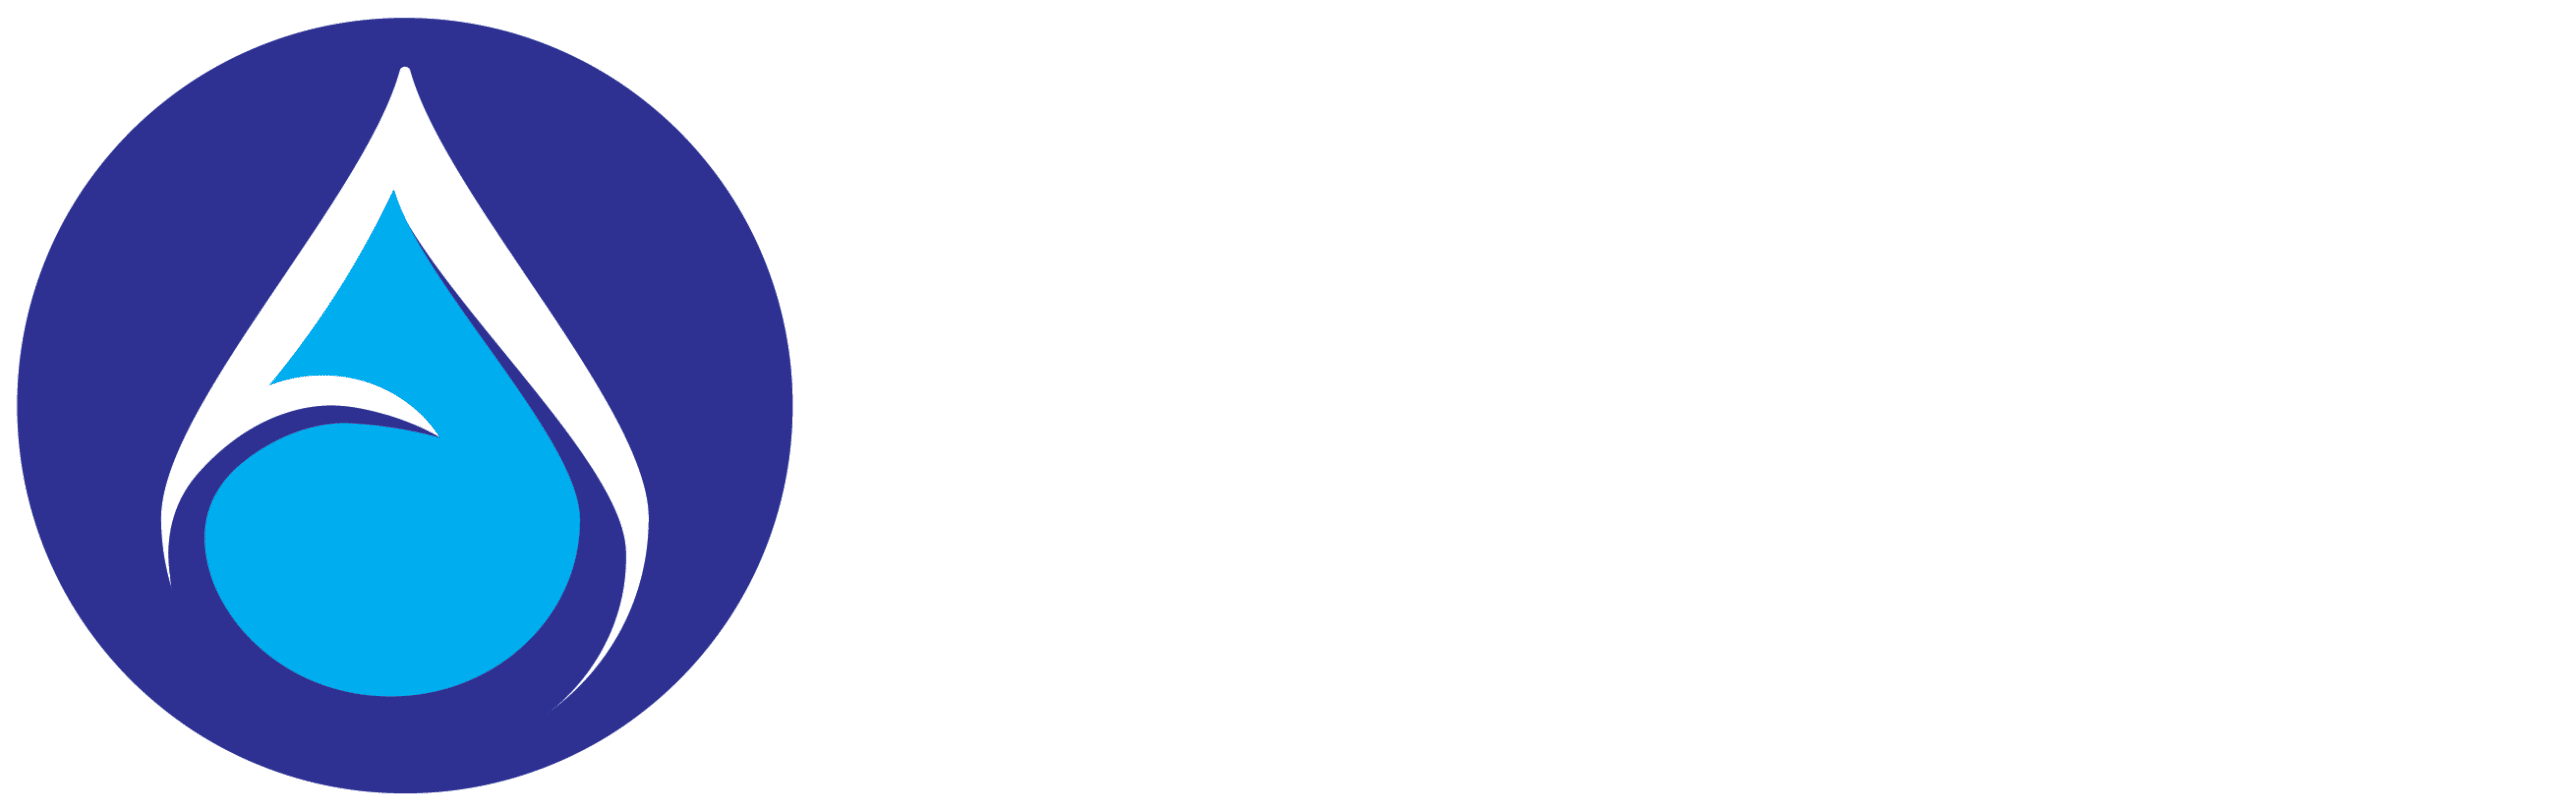 Apex washing Logo